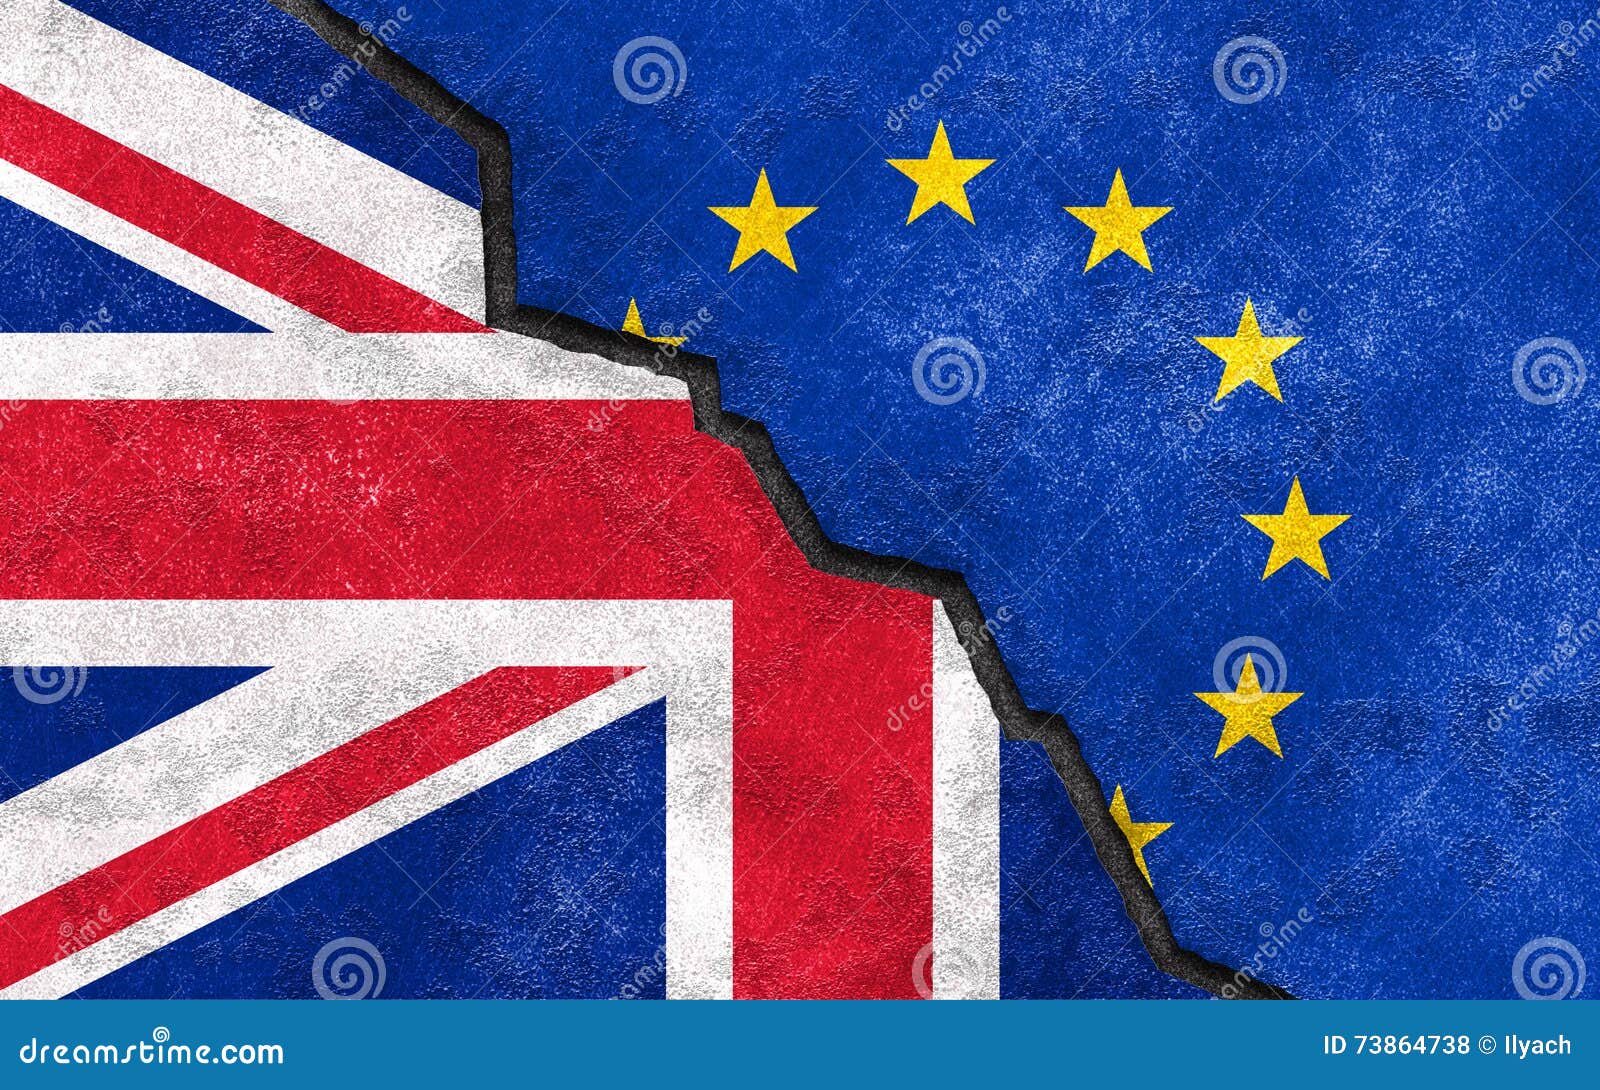 Brexit Great Britain Leaving EU Vector Illustration | CartoonDealer.com #861474581300 x 903